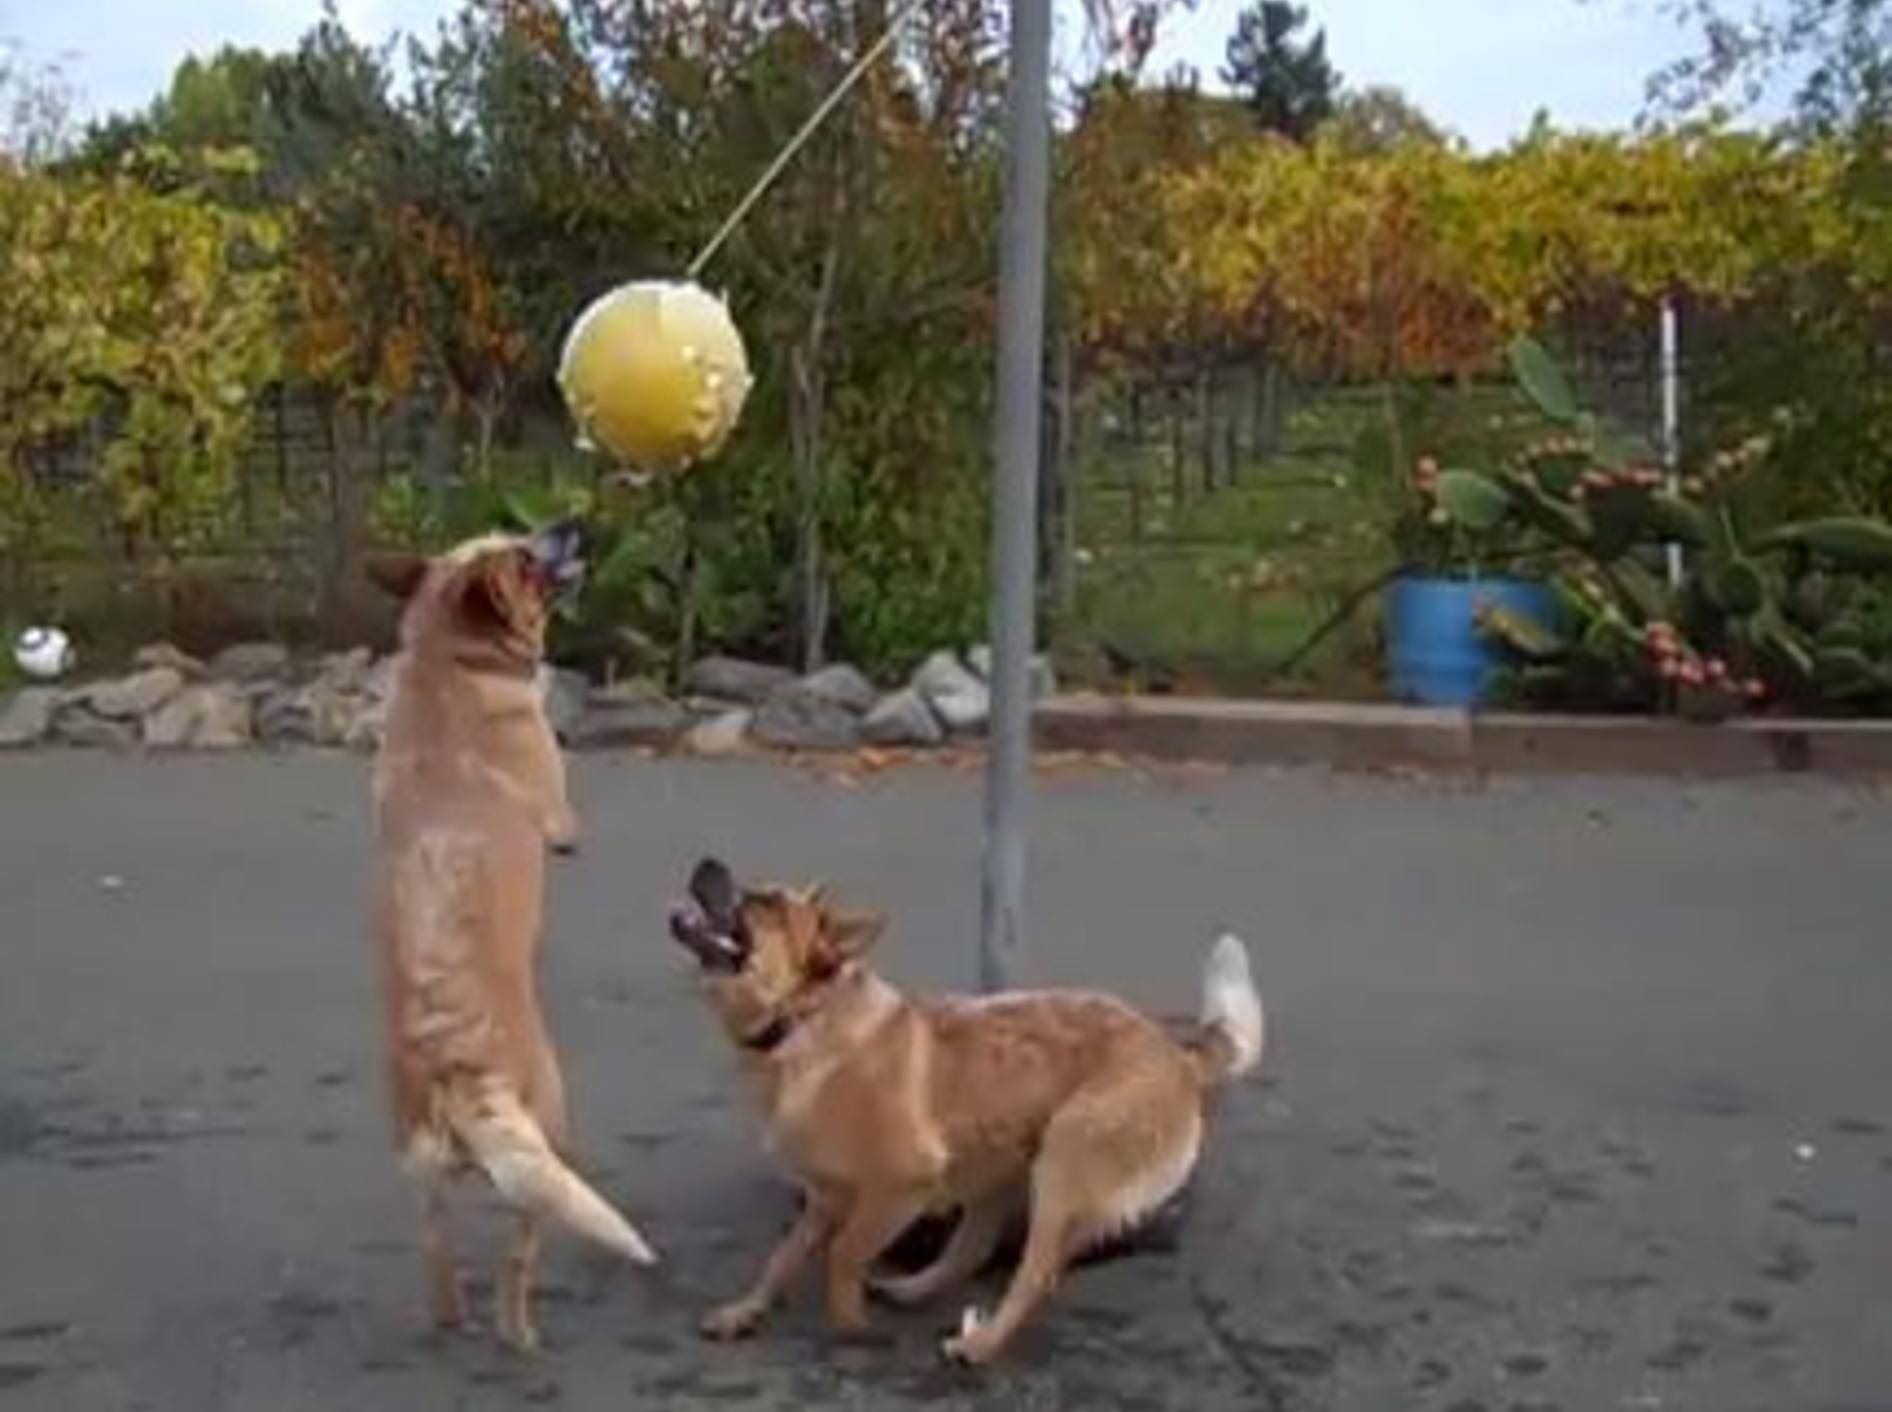 Die australischen Schäferhunde Wrangler und Doc haben Spaß am Tetherball - Bild: Youtube / 3332andisgo